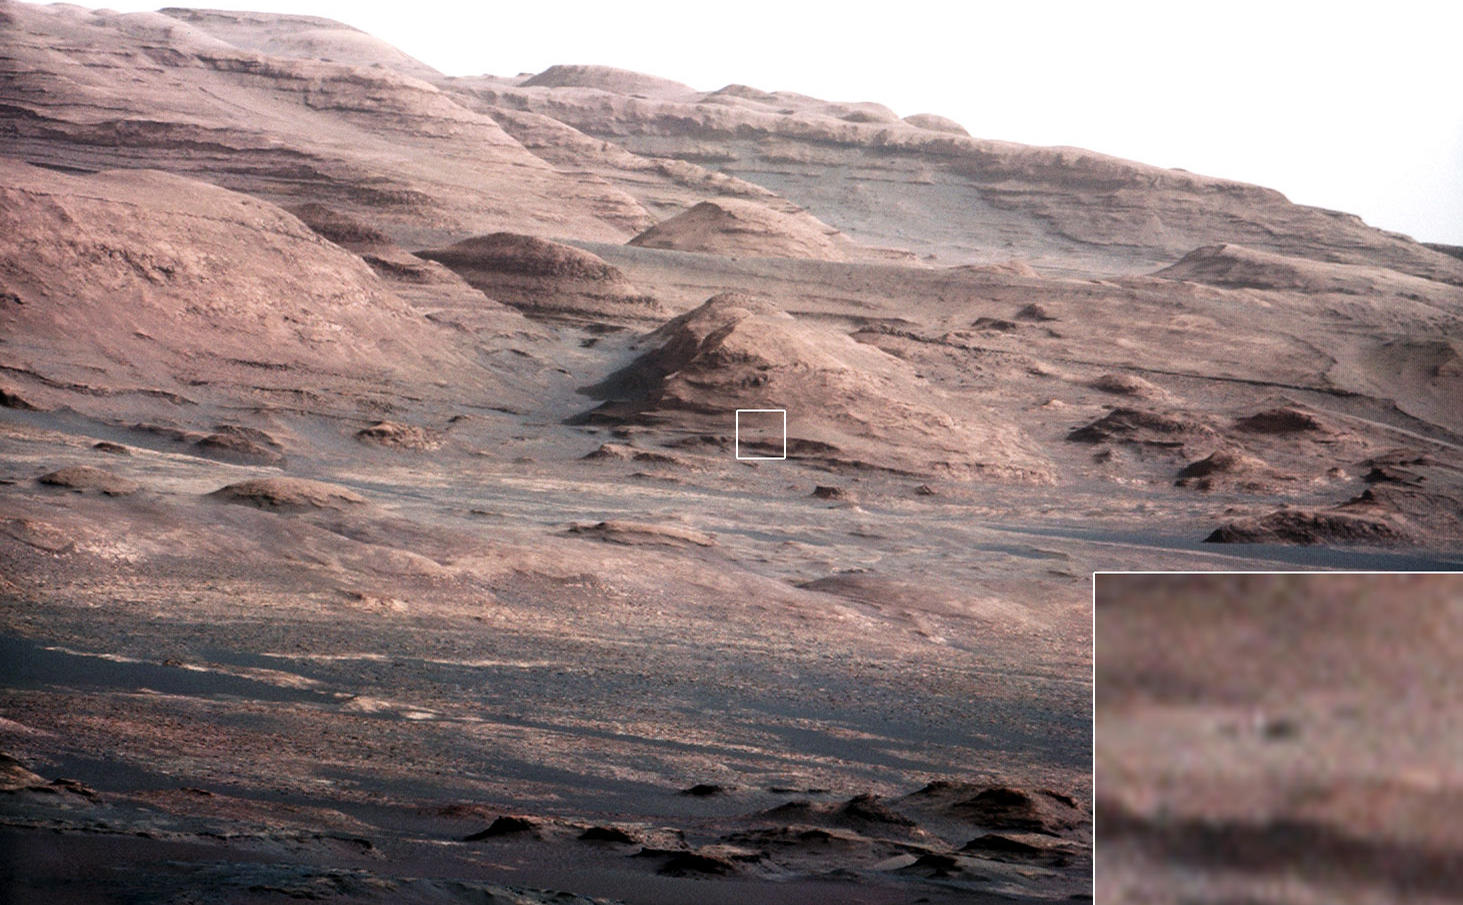 Layers at the Base of Mount Sharp – NASA Mars Exploration